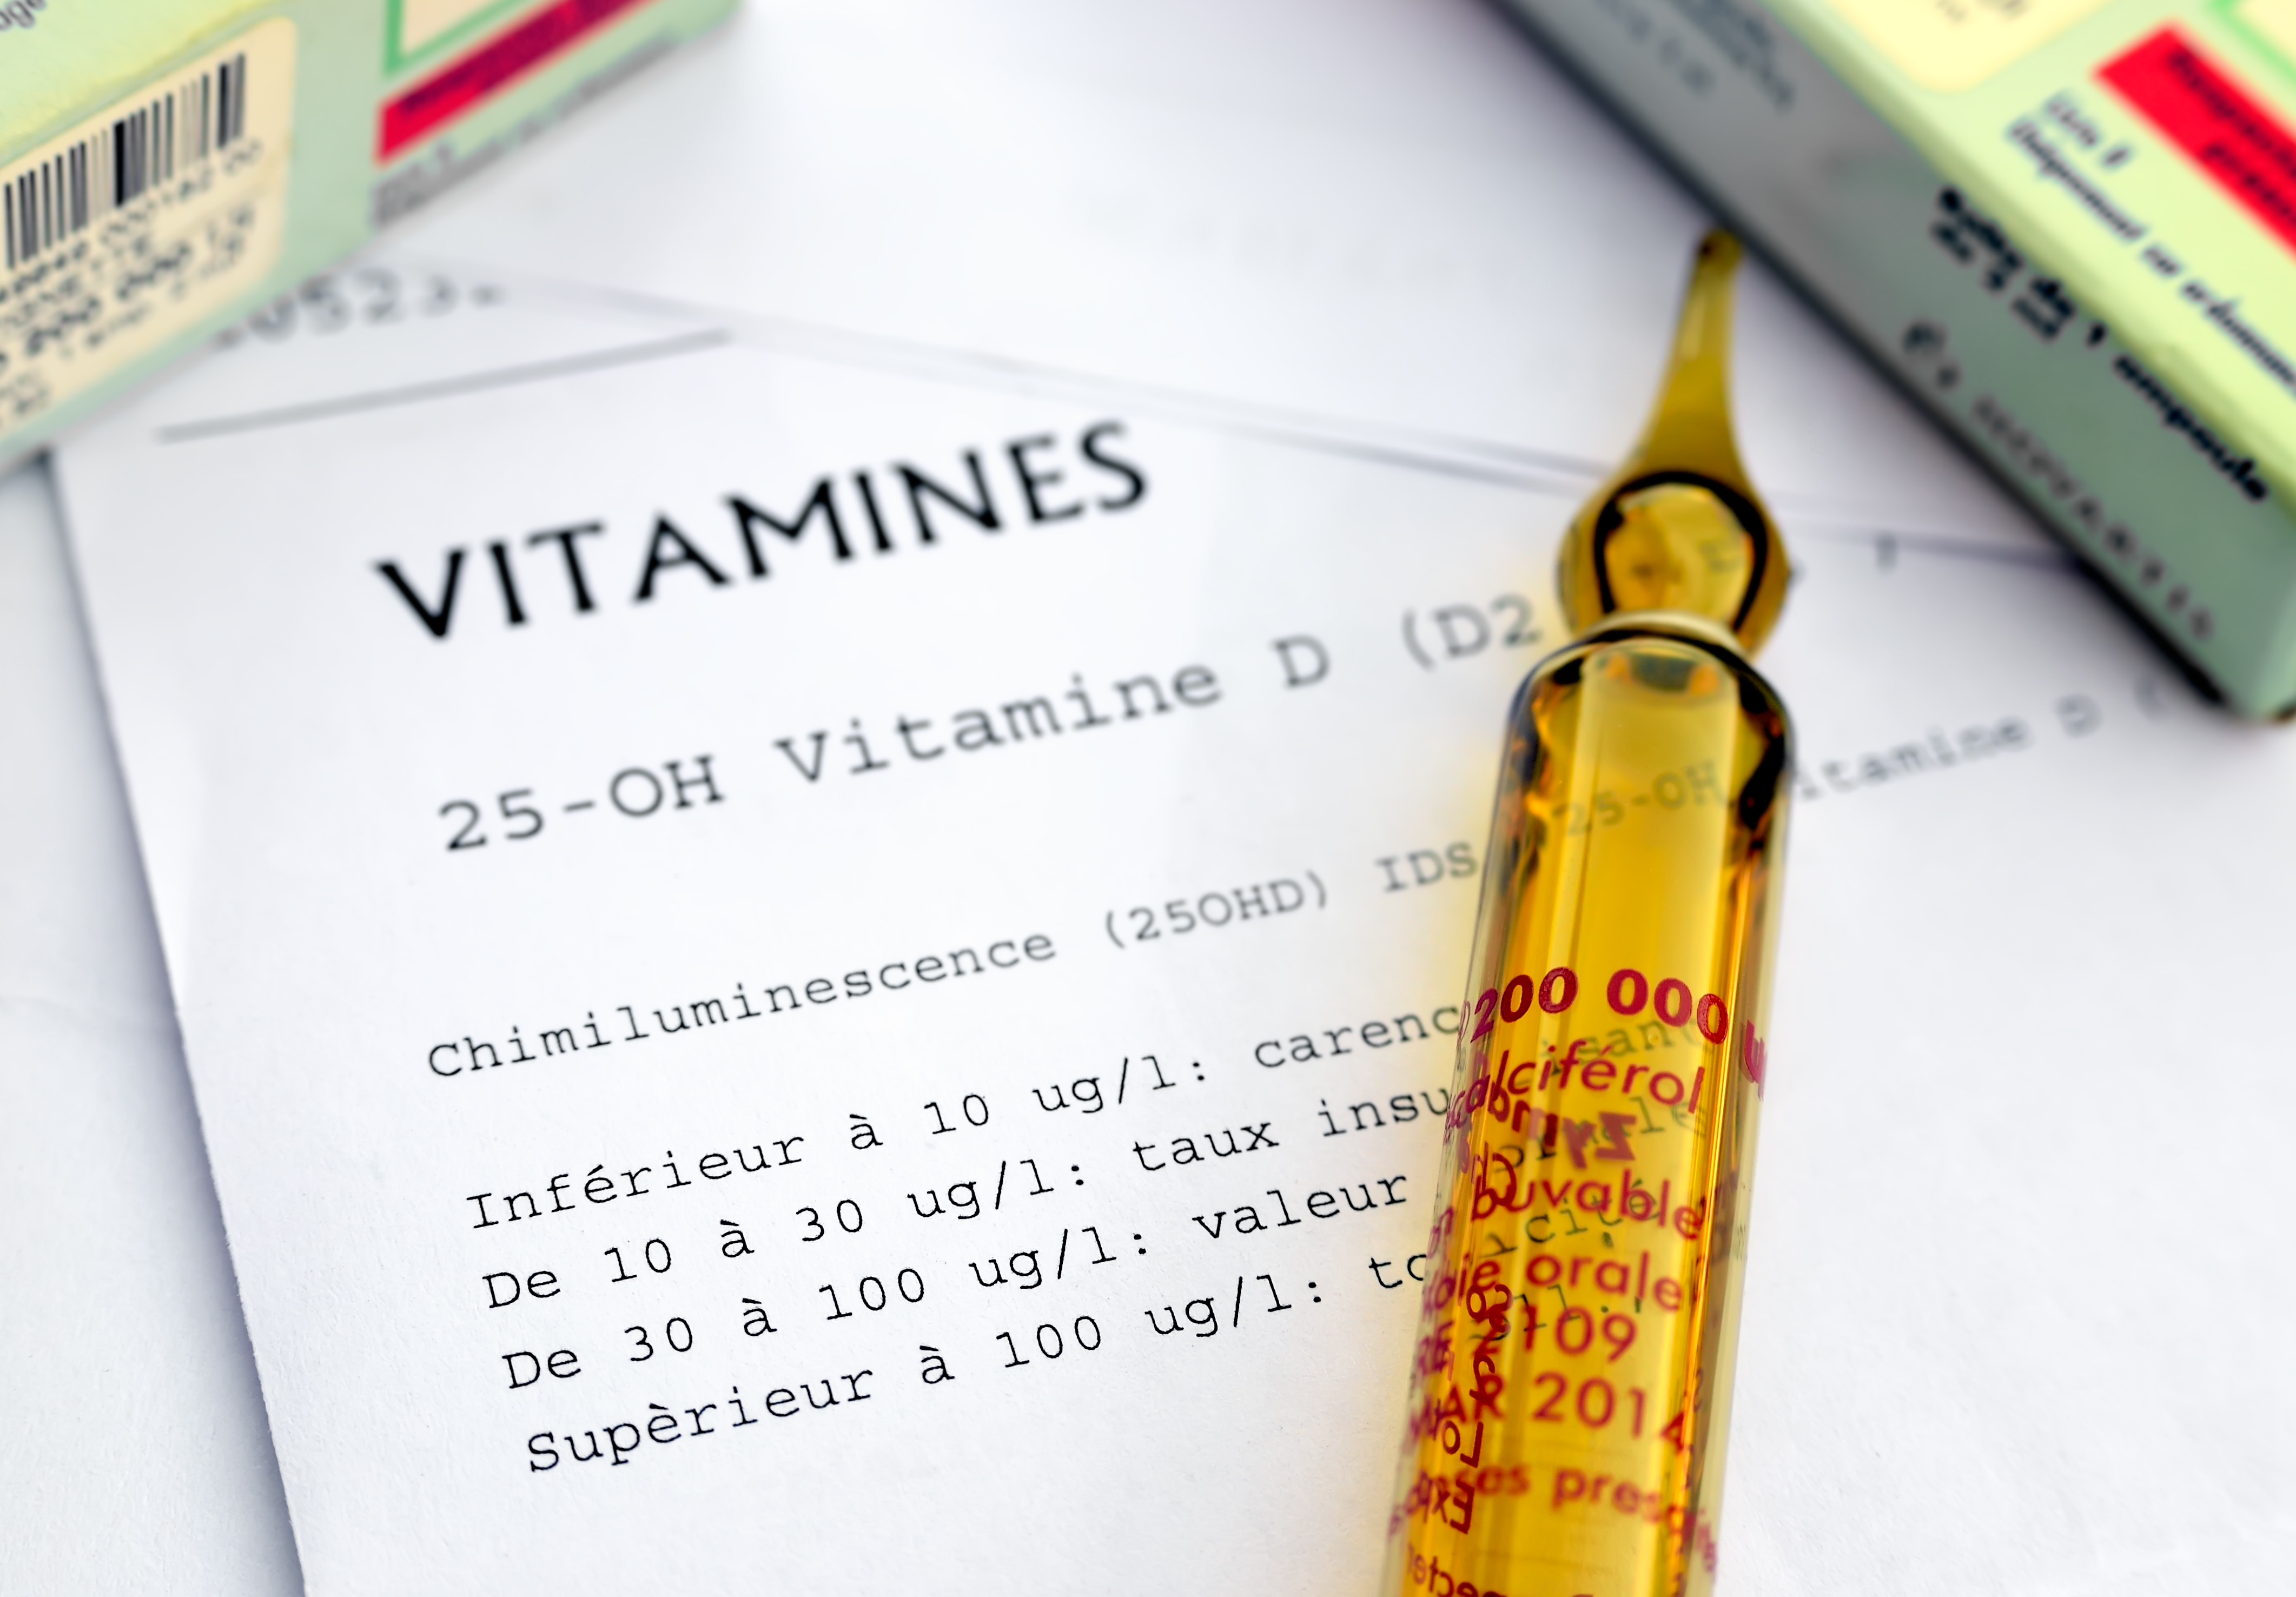 Le lupus caractérisé entre autres symptômes par une photosensibilité élevée, peut entraîner des complications métaboliques en cas de carence en vitamine D (Visuel Adobe Stock 4233590)